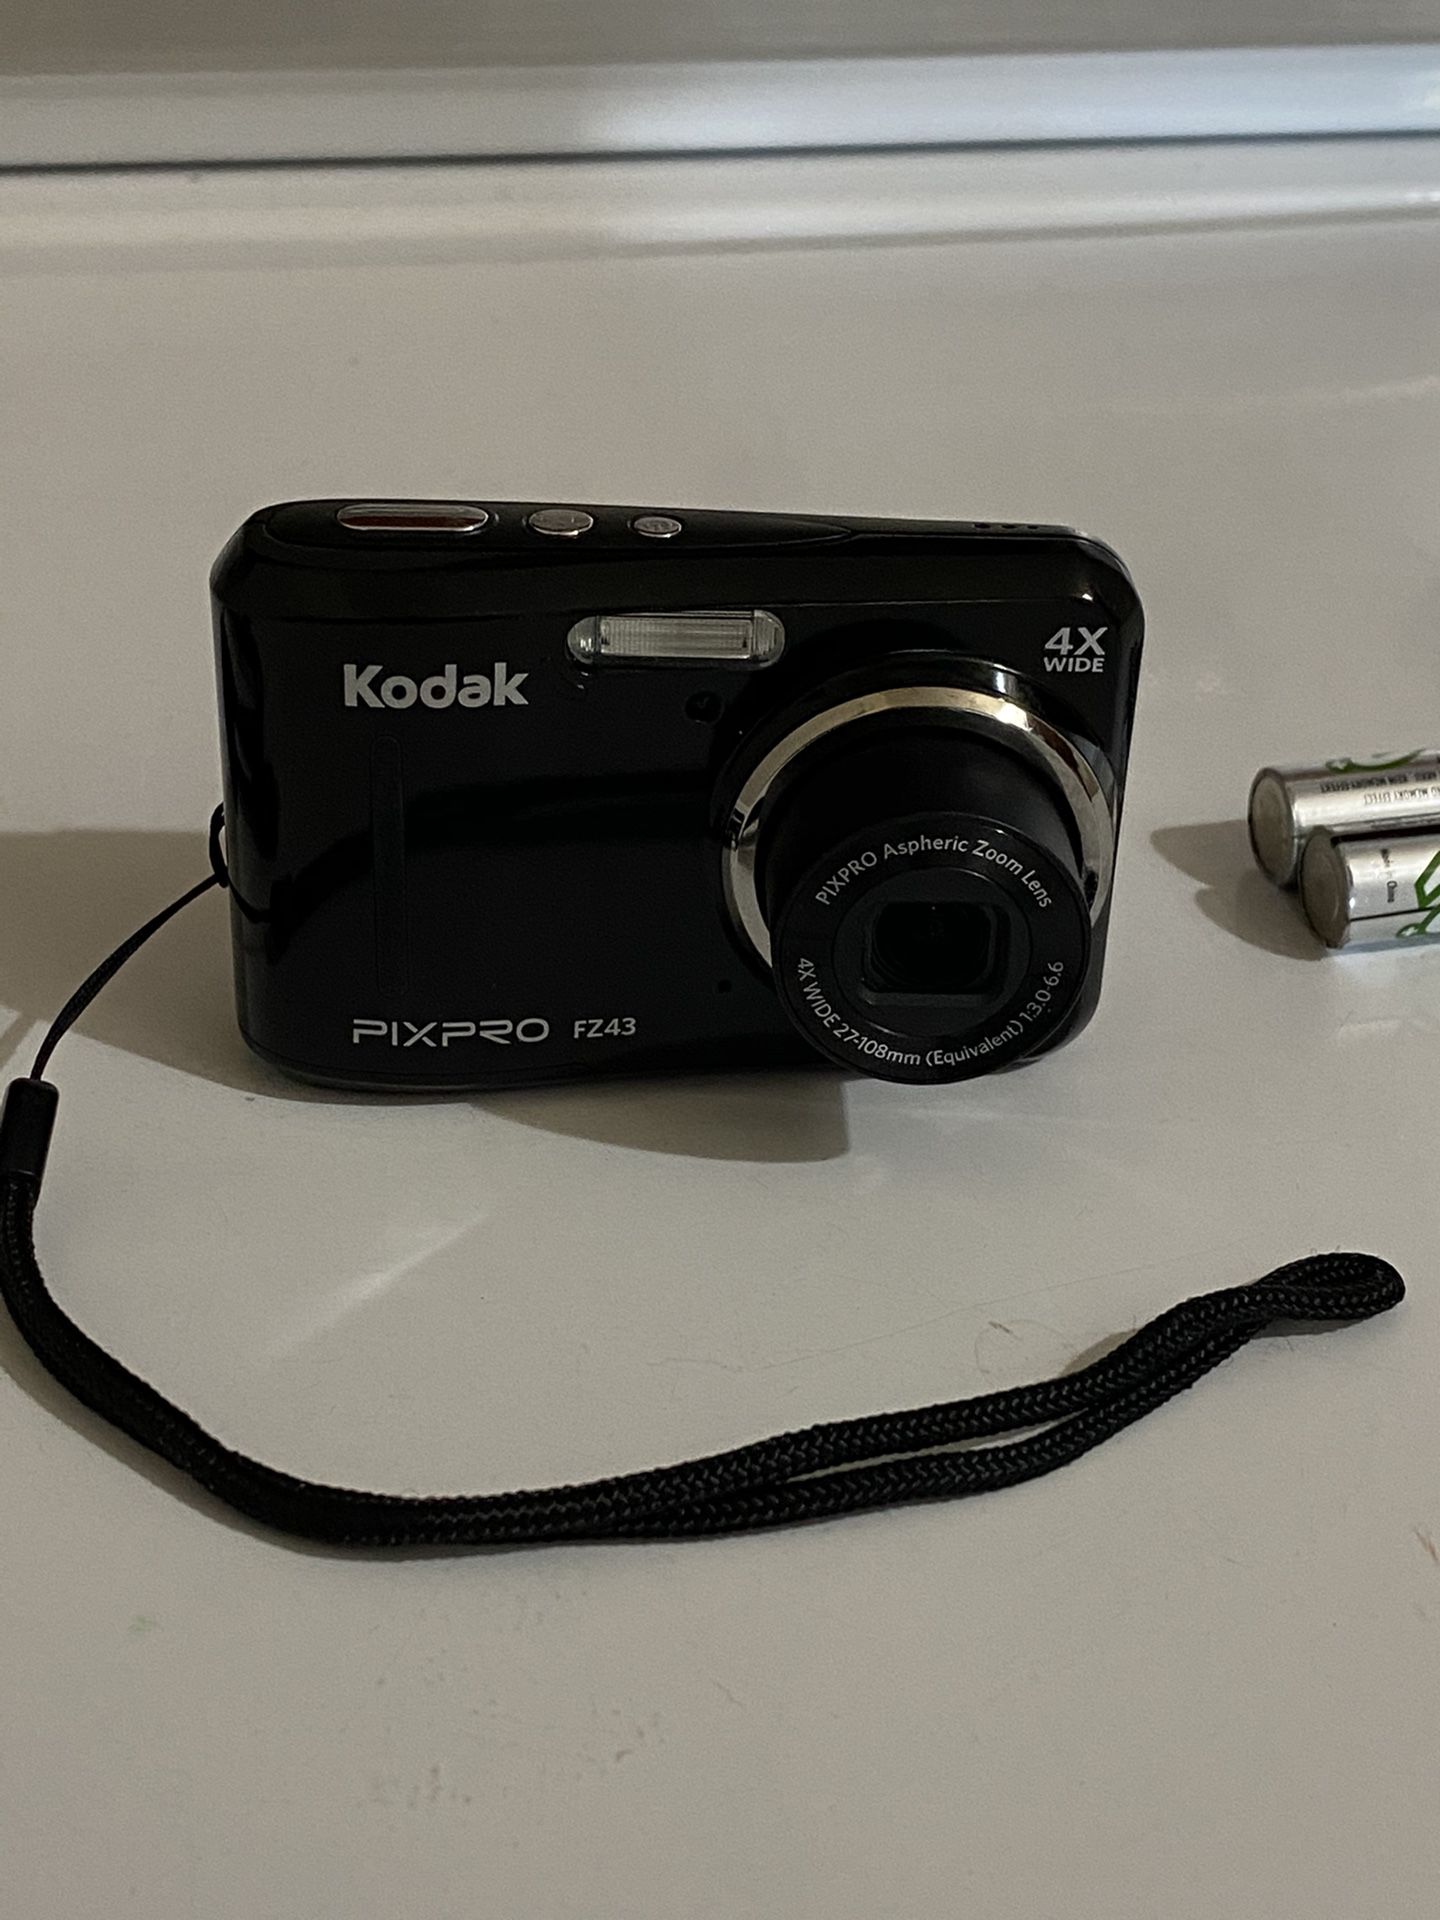 Kodak pixpro FZ43